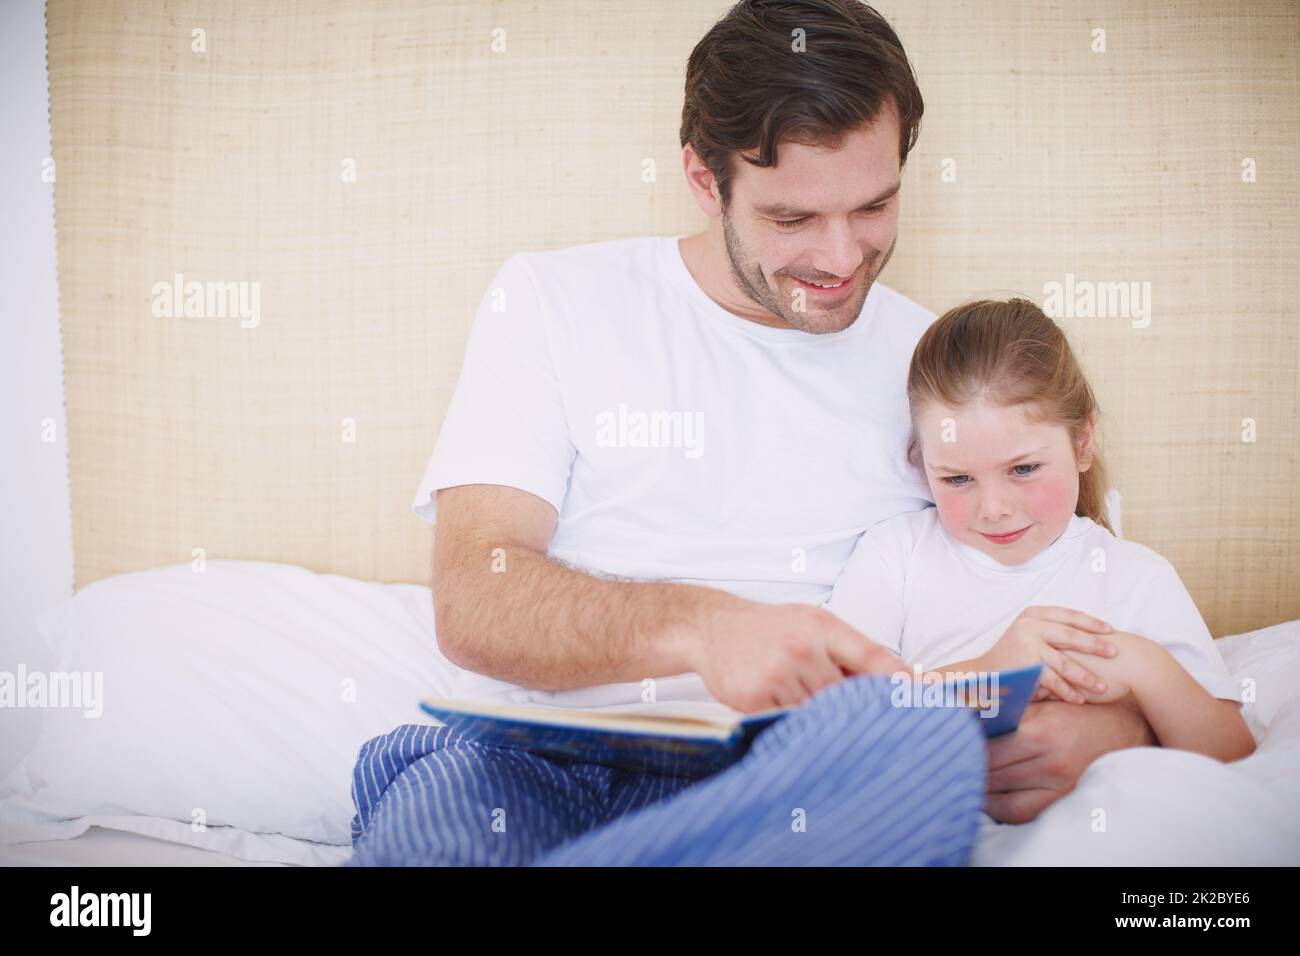 Wenn man sich alle Bilder ansieht. Aufnahme eines engagierten Vaters, der seine junge Tochter vor dem Schlafengehen las. Stockfoto